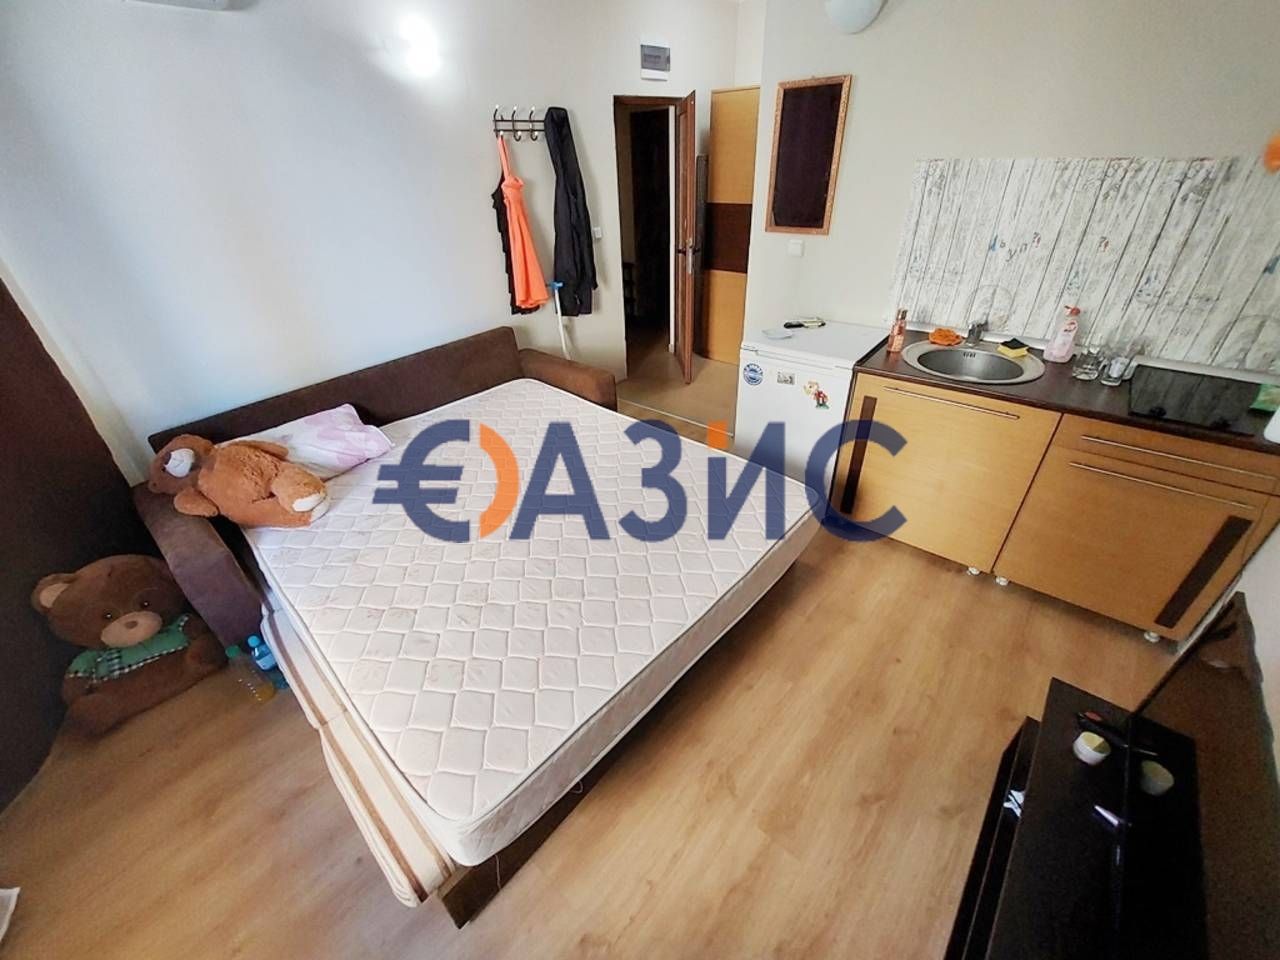 Appartement à Slantchev Briag, Bulgarie, 28 m2 - image 1